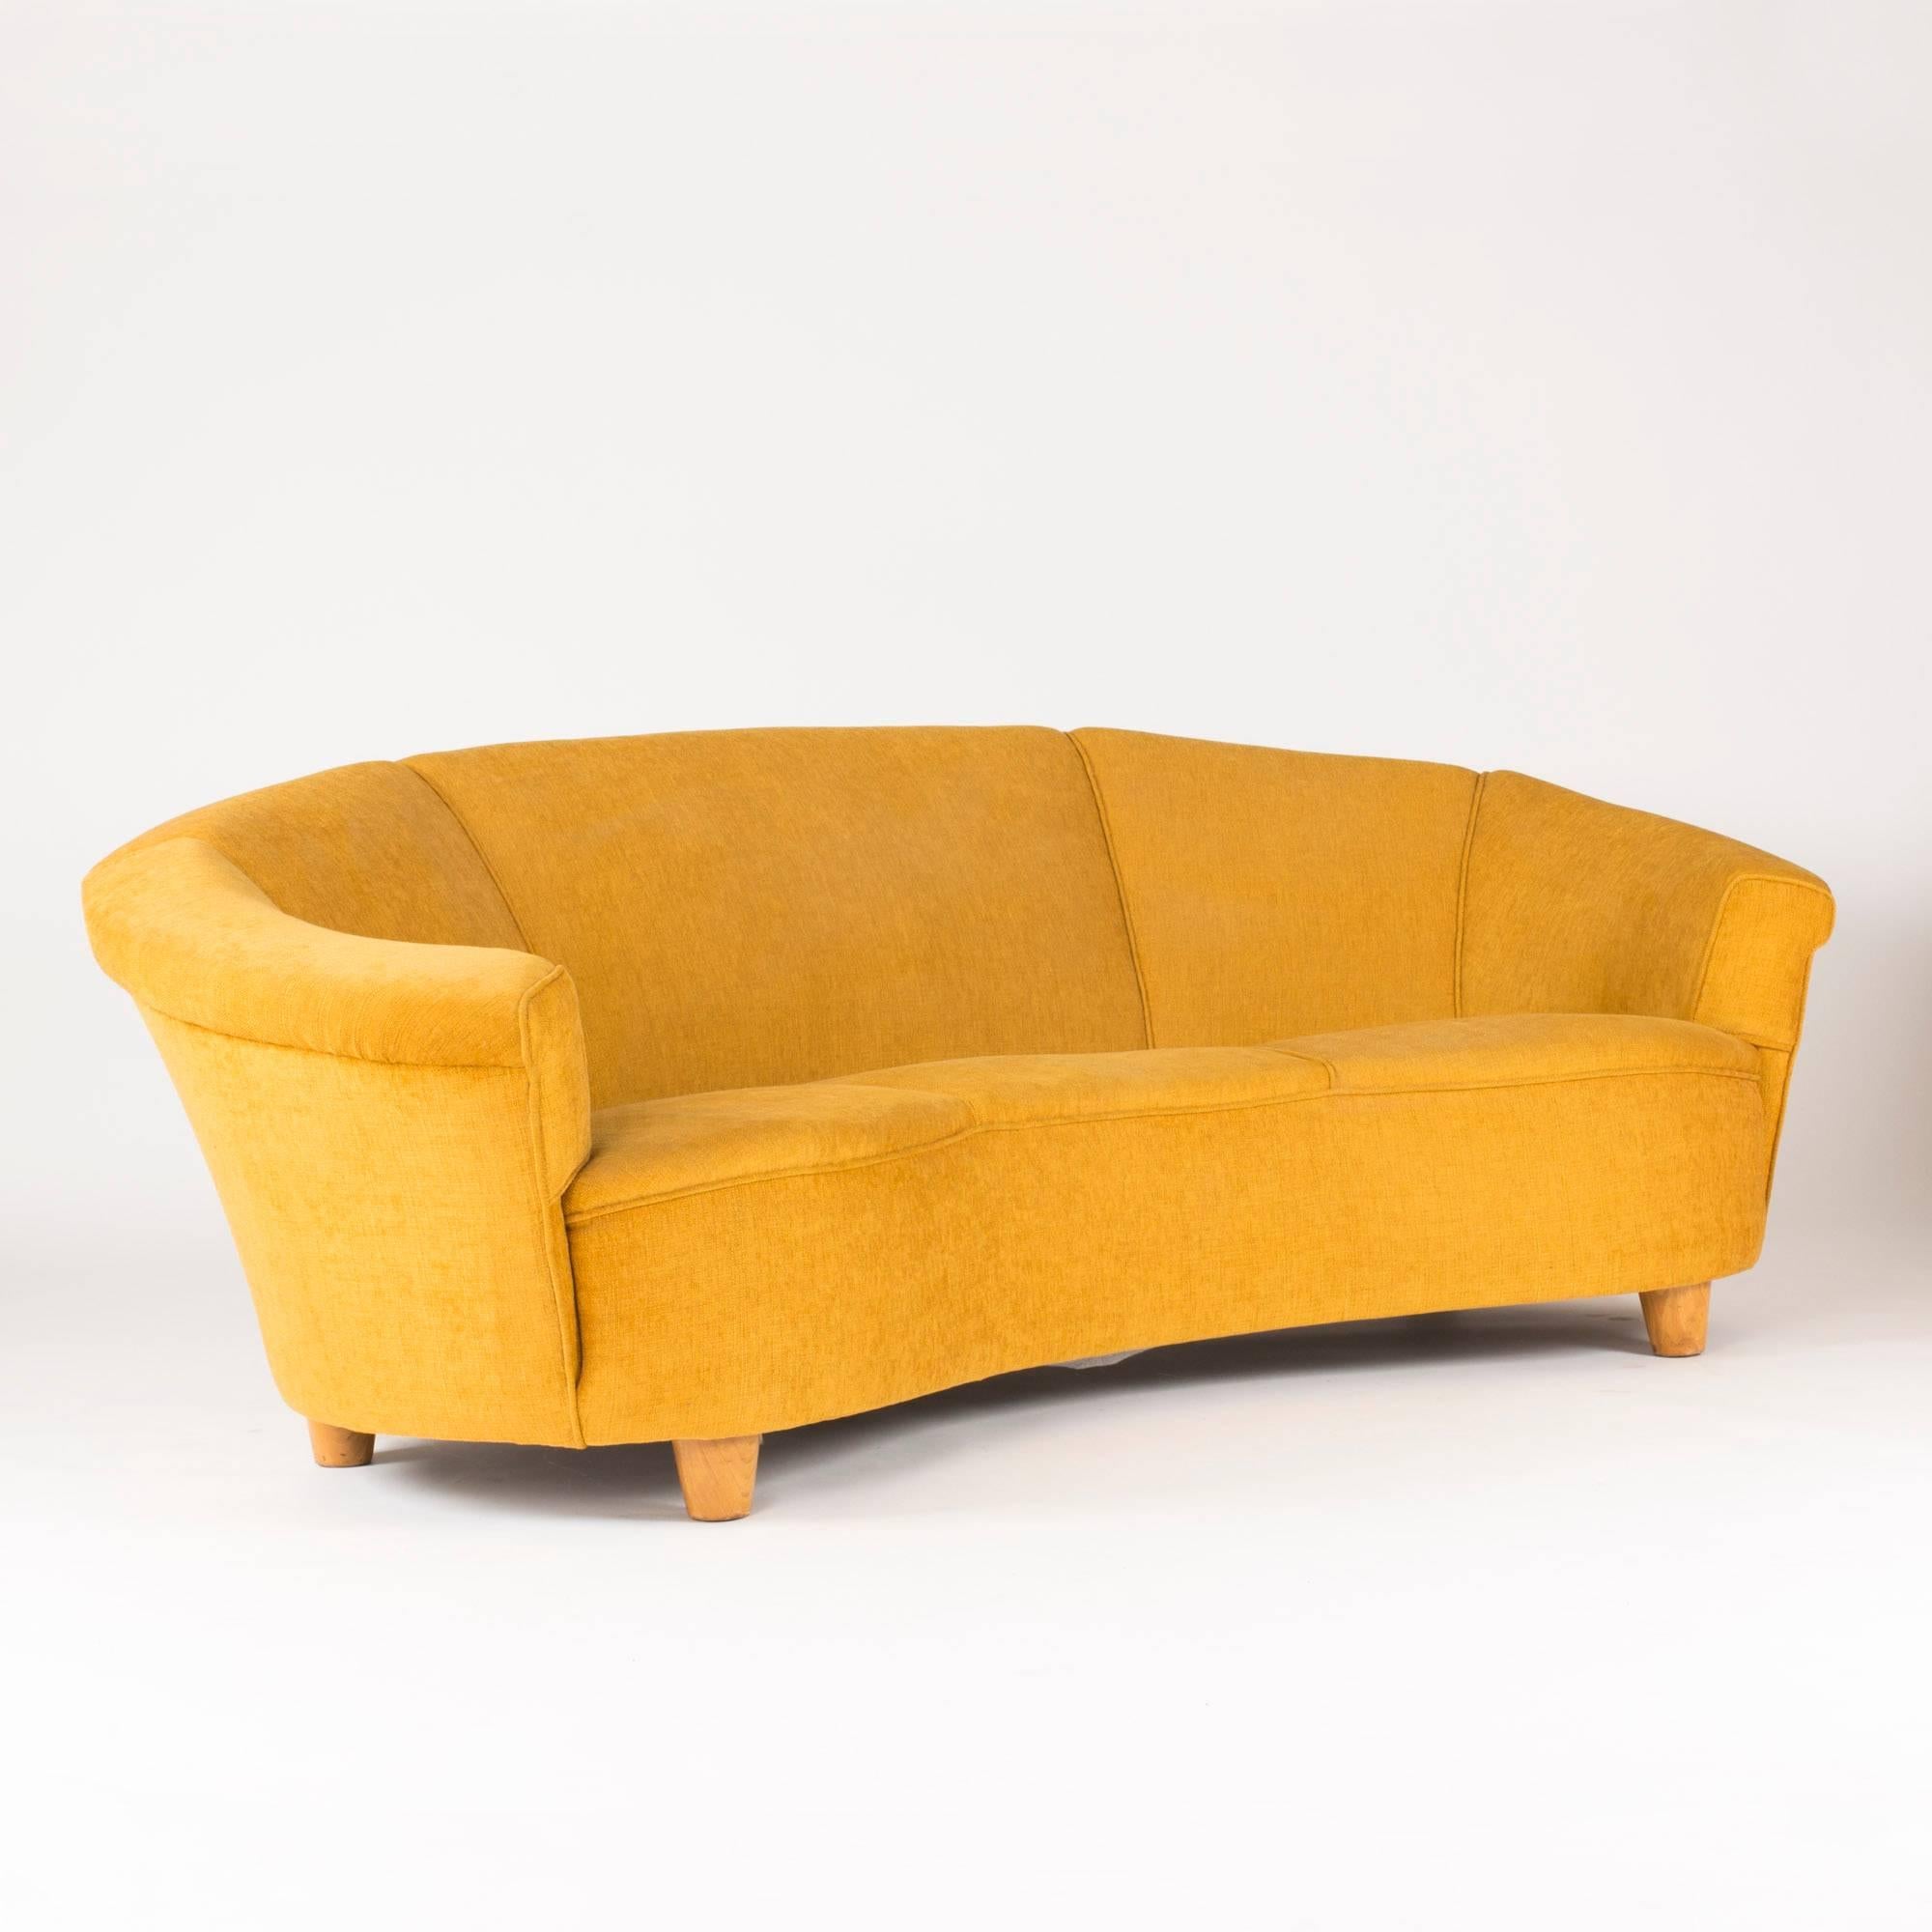 Luxuriöses, voluminöses Sofa in einladender, geschwungener Form mit senfgelber Polsterung. Im Stil von Otto Schulz. Sitzhöhe 43 cm.